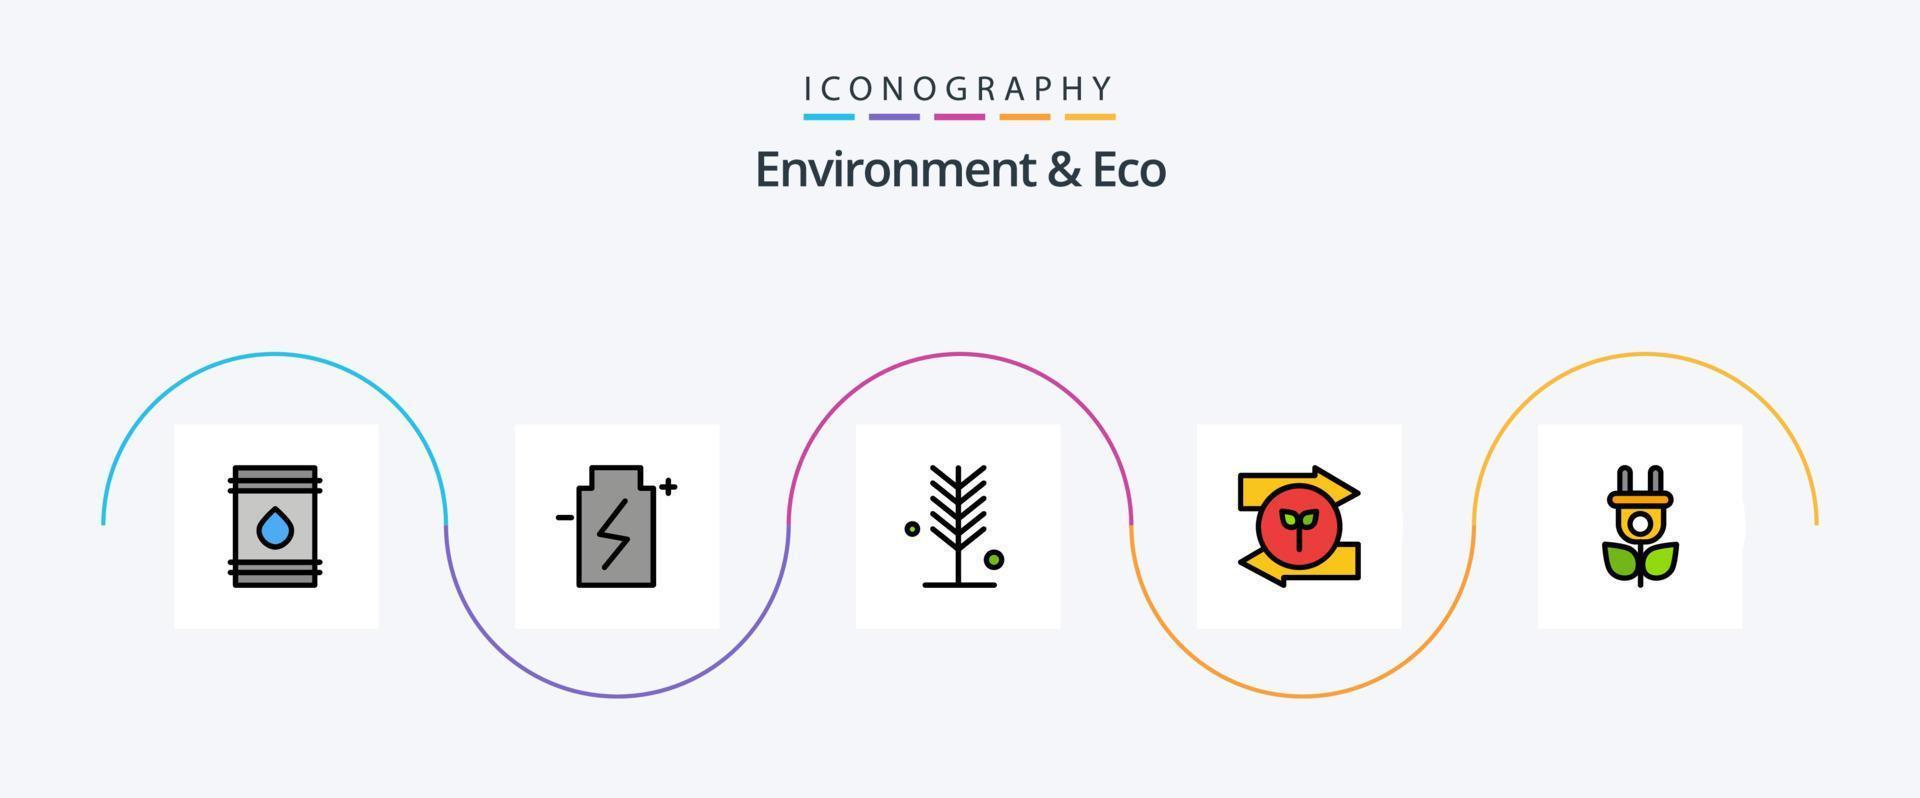 ambiente e linha ecológica cheia de pacote de 5 ícones planos, incluindo direito. seta. energia. árvore. natureza vetor